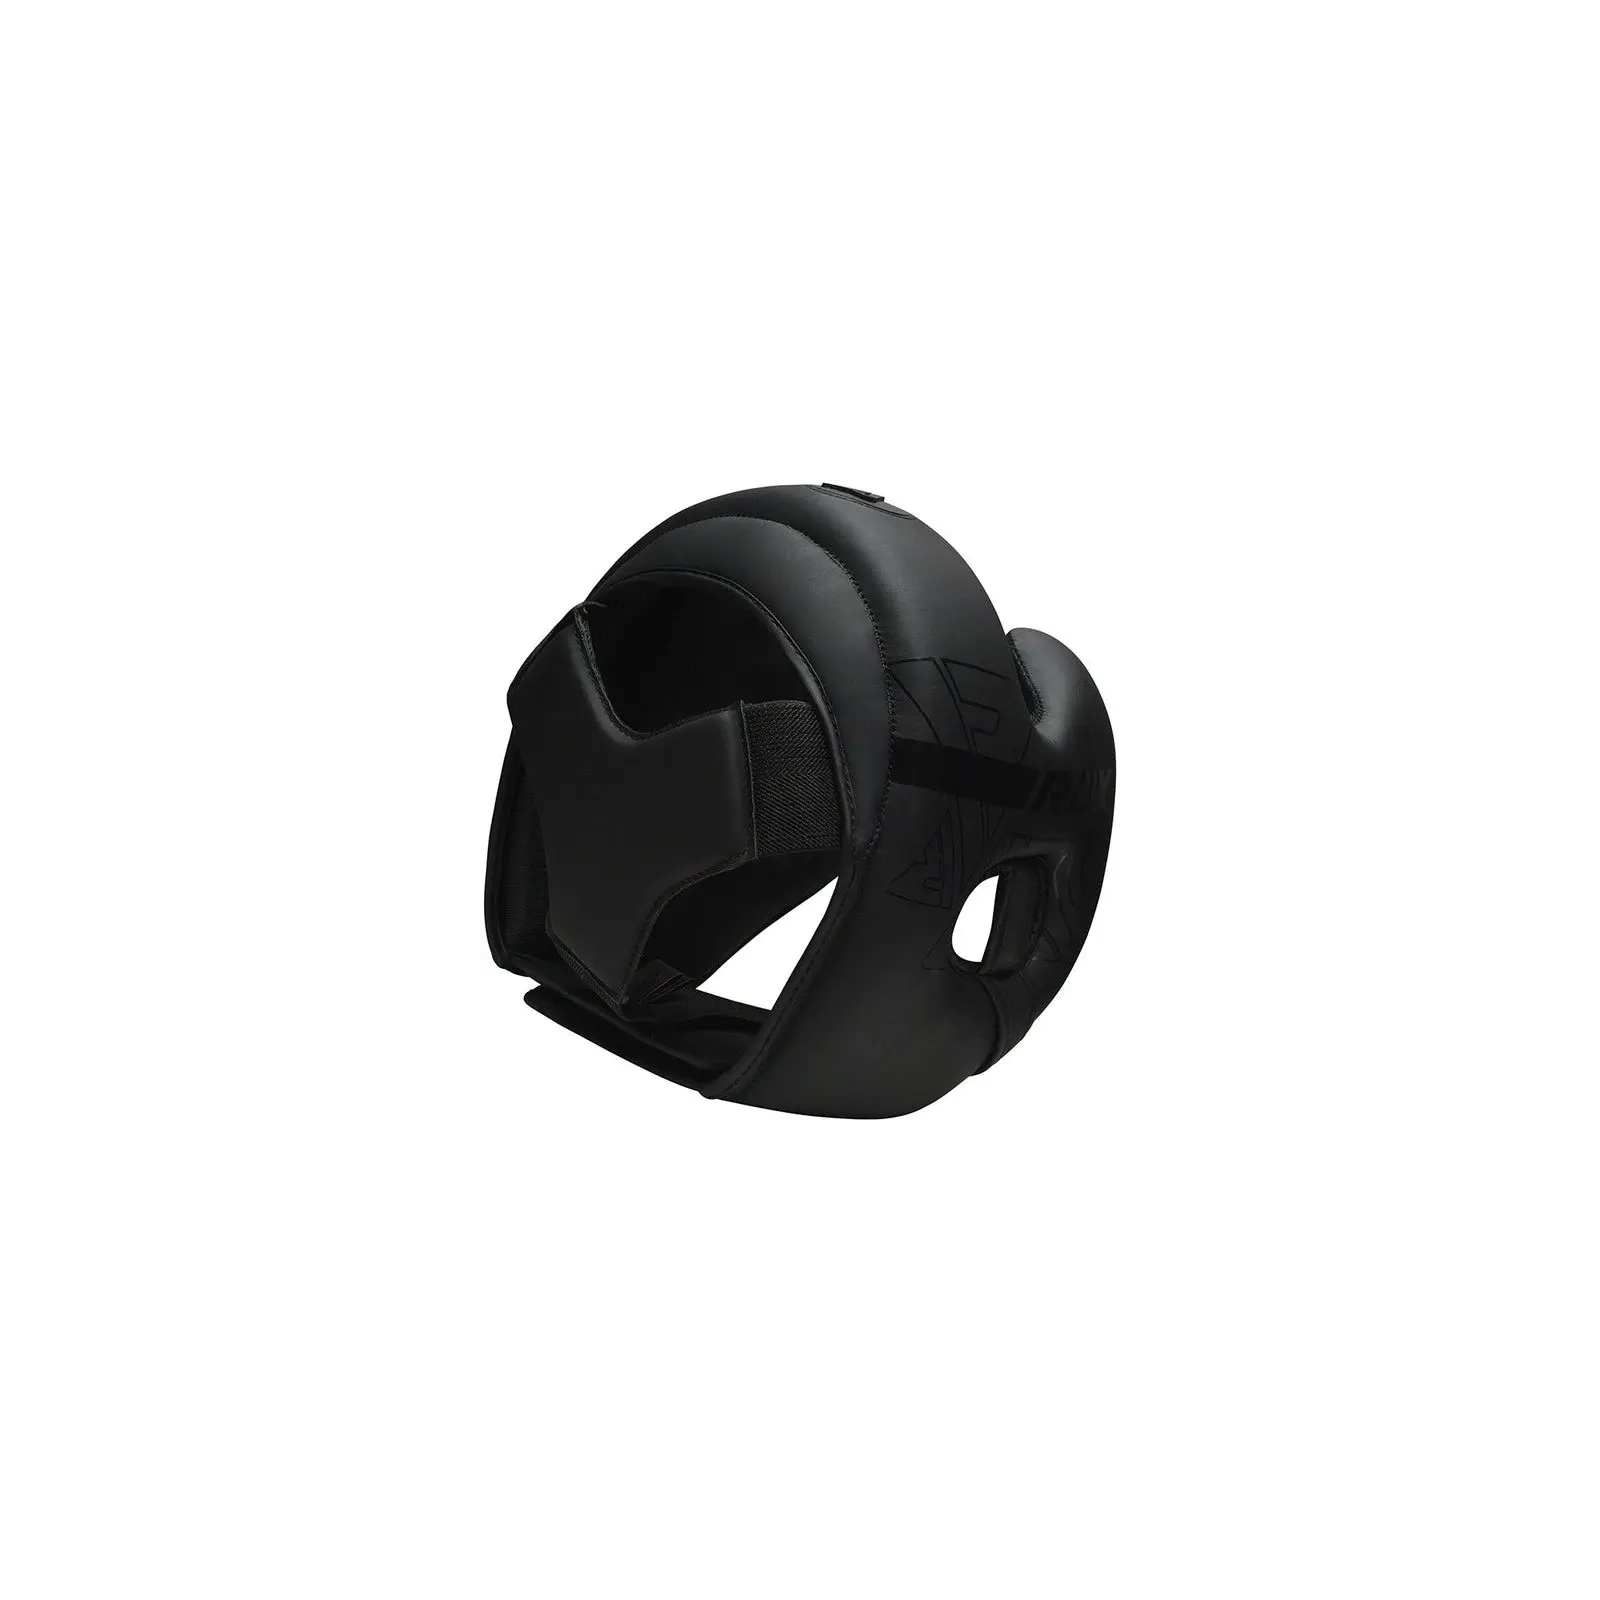 Боксерский шлем RDX F6 KARA Matte Black XL (HGR-F6MB-XL) изображение 4